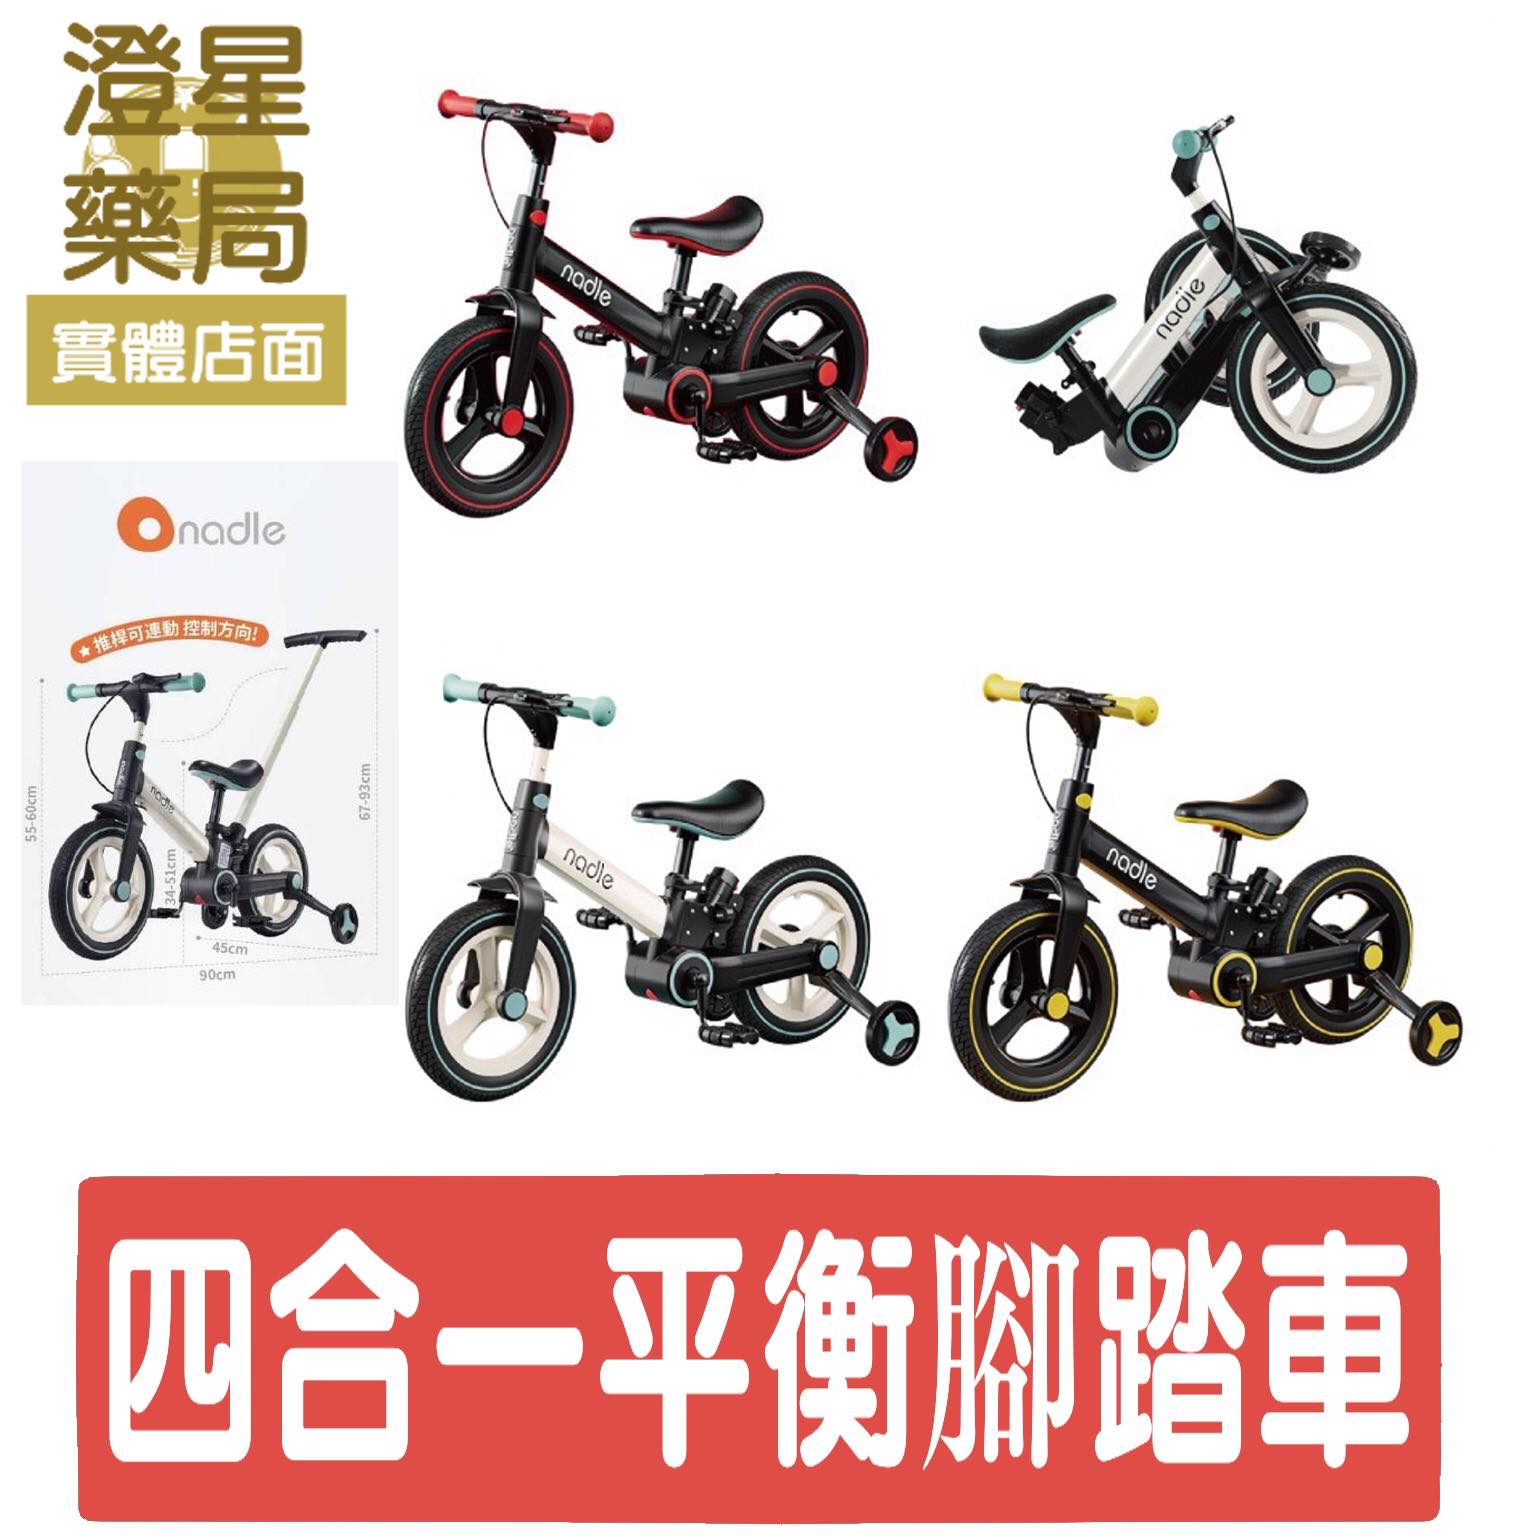 【免運】 奧地利 Nadle S900 四合一平衡腳踏車 滑步車/板車/腳踏車/推車/平衡車